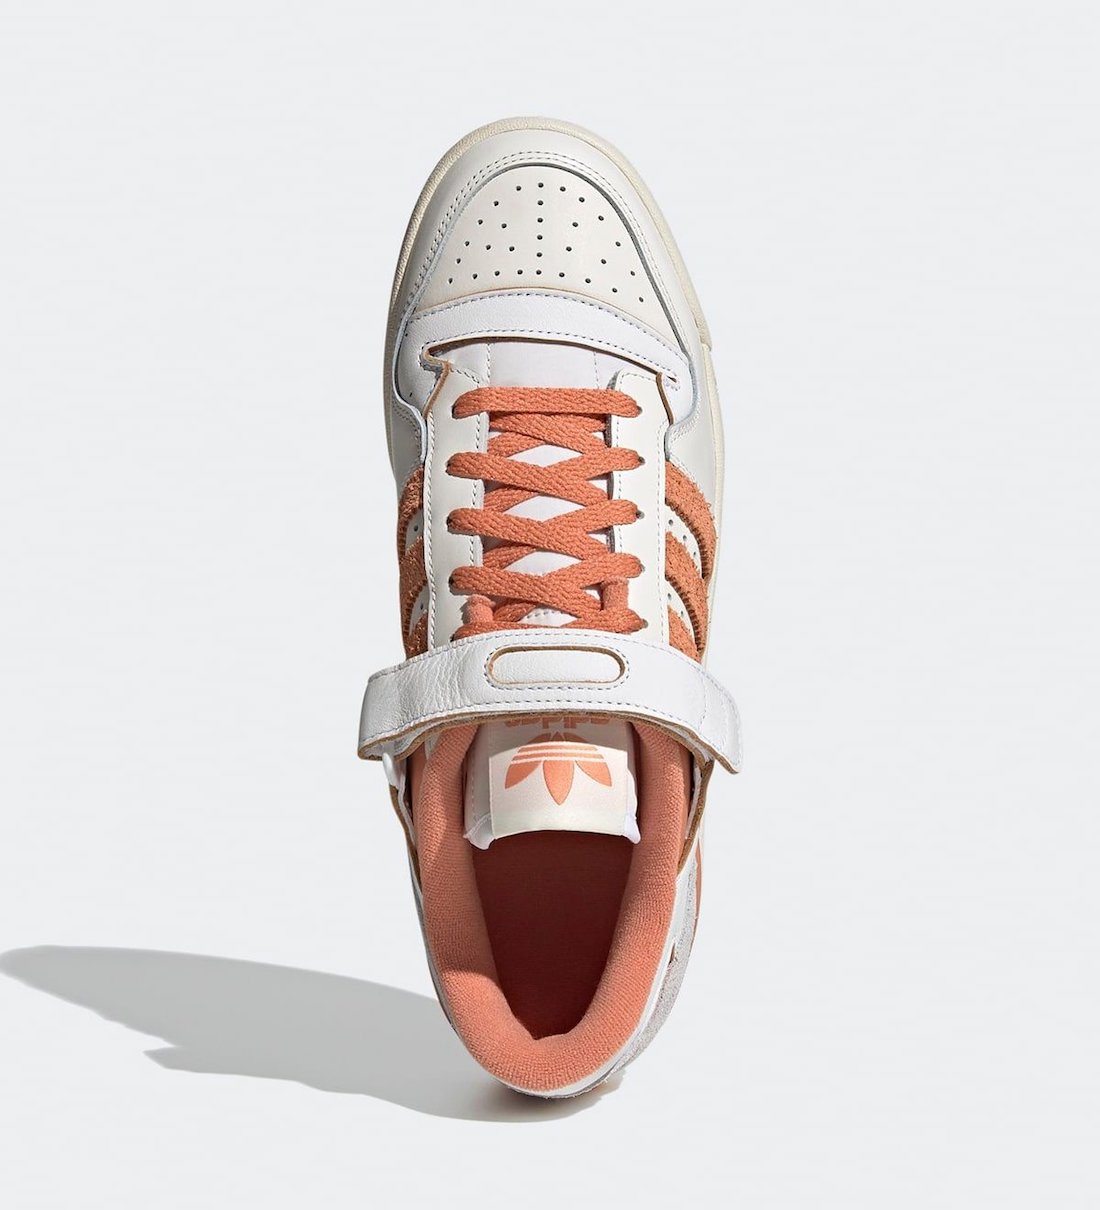 | Copper Footwear Amblus Release Flux Superstar ZX adidas G57966 | Date Info Amblus \